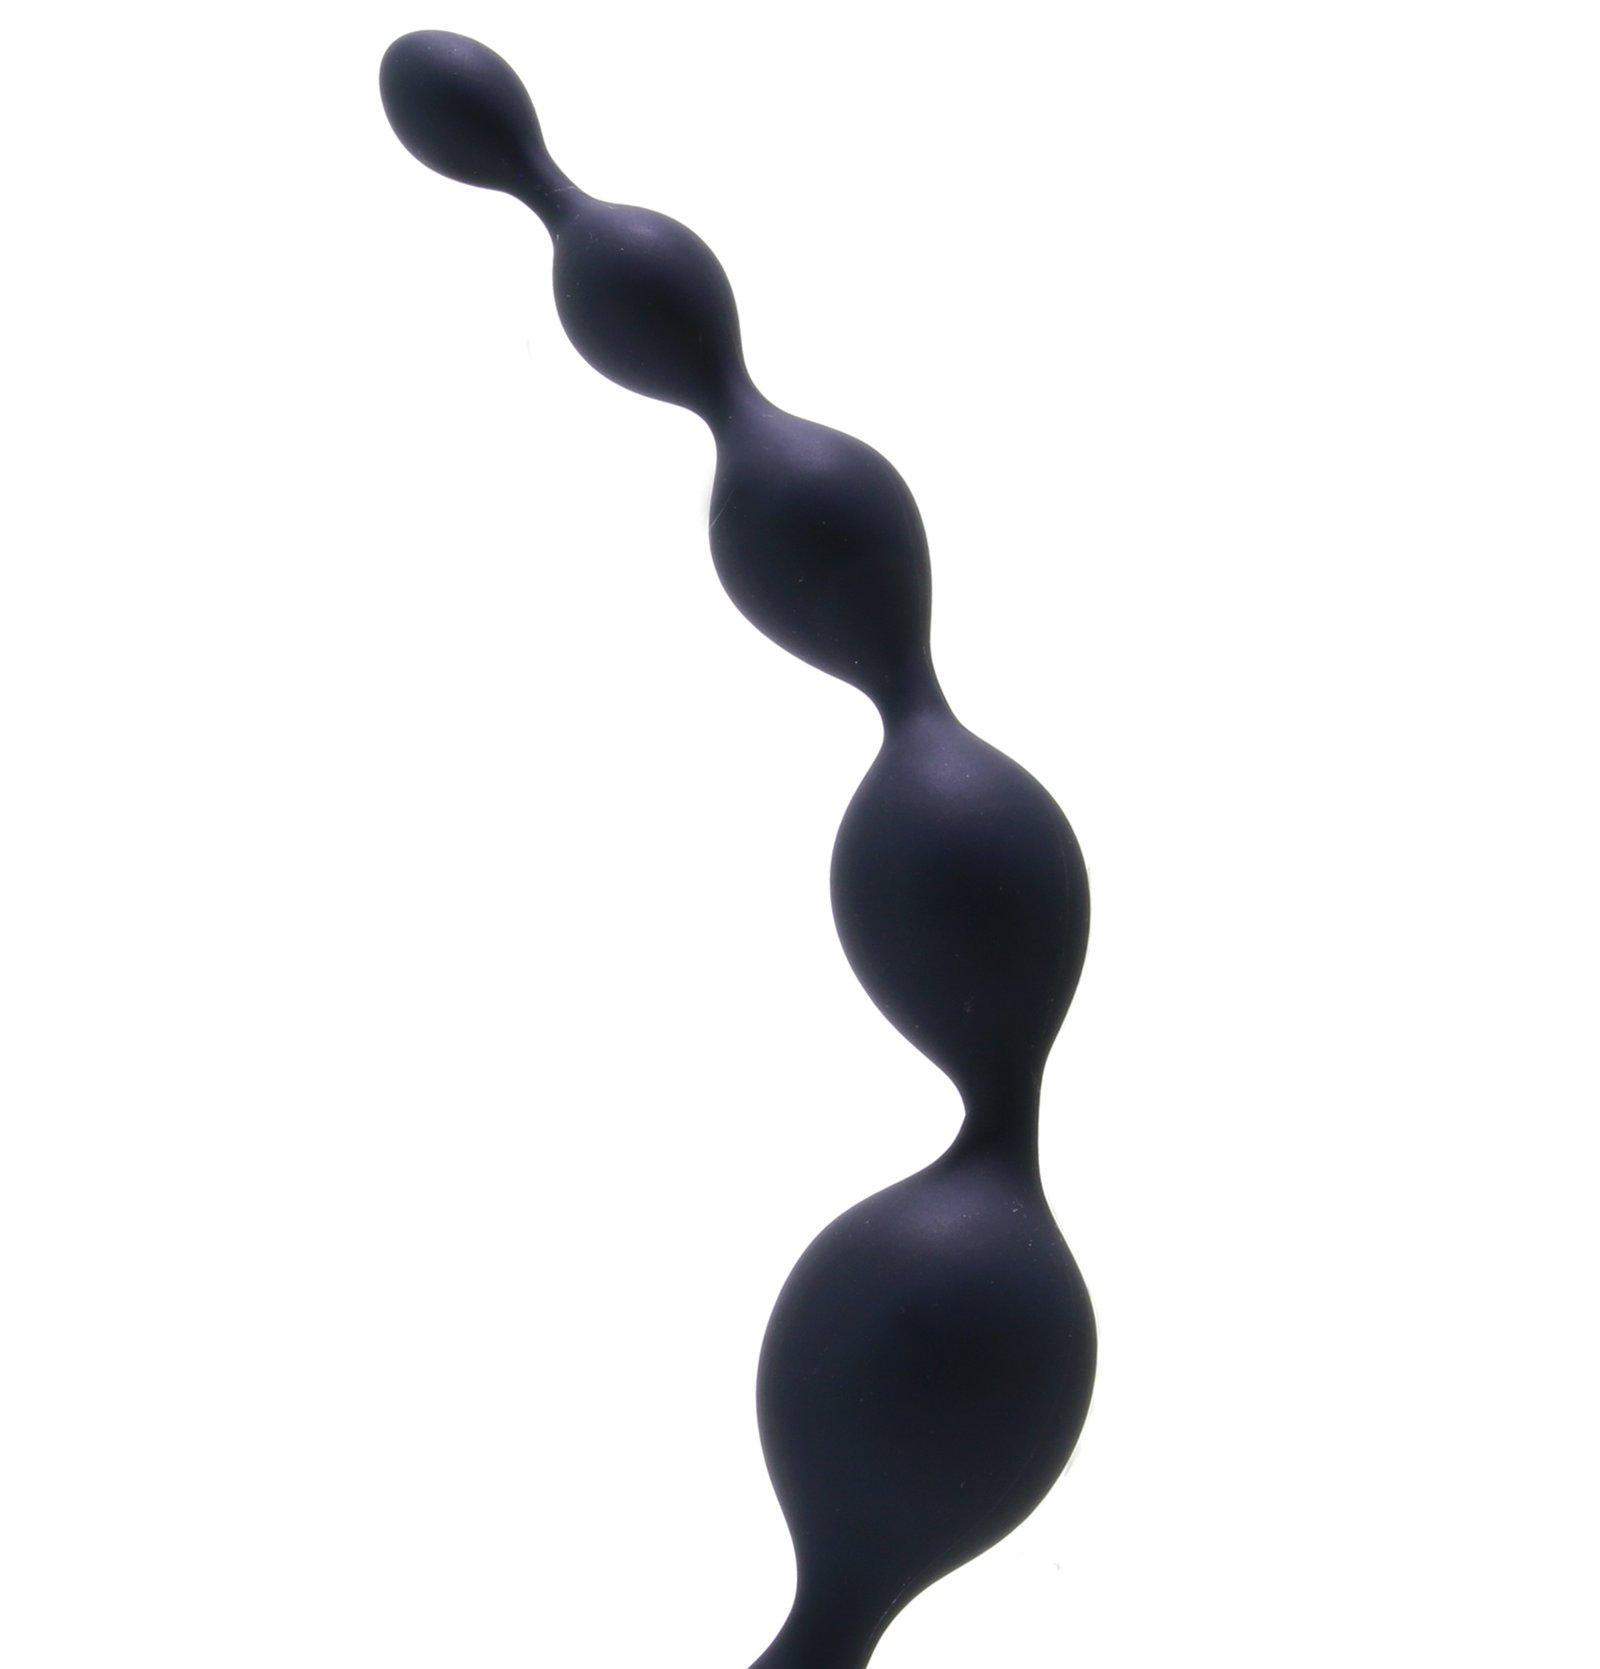 Scorpion sculpture erotic bondage